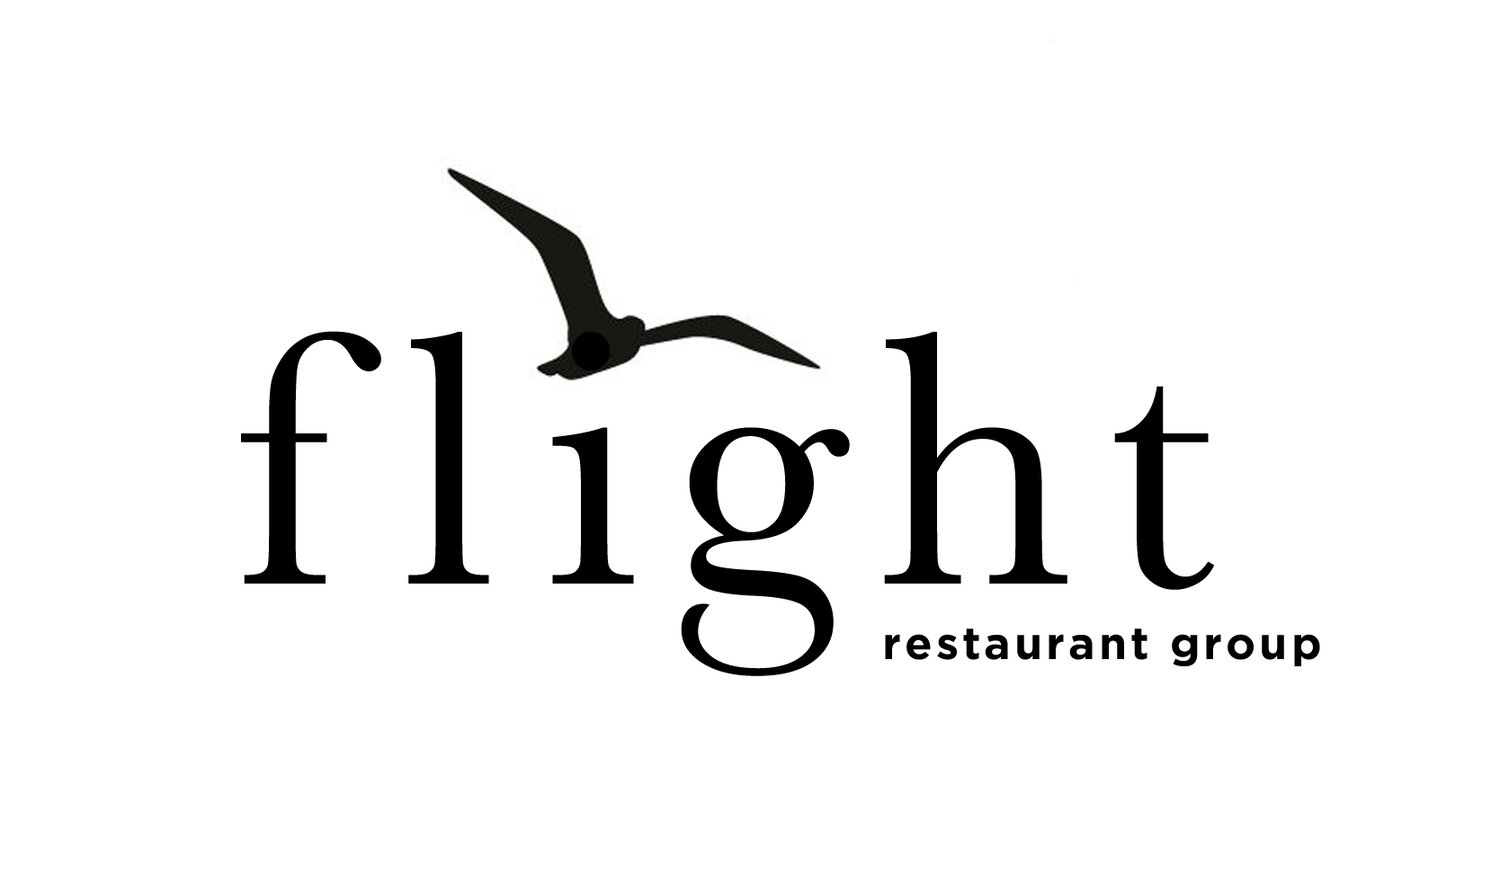 Take Flight Restaurant Group